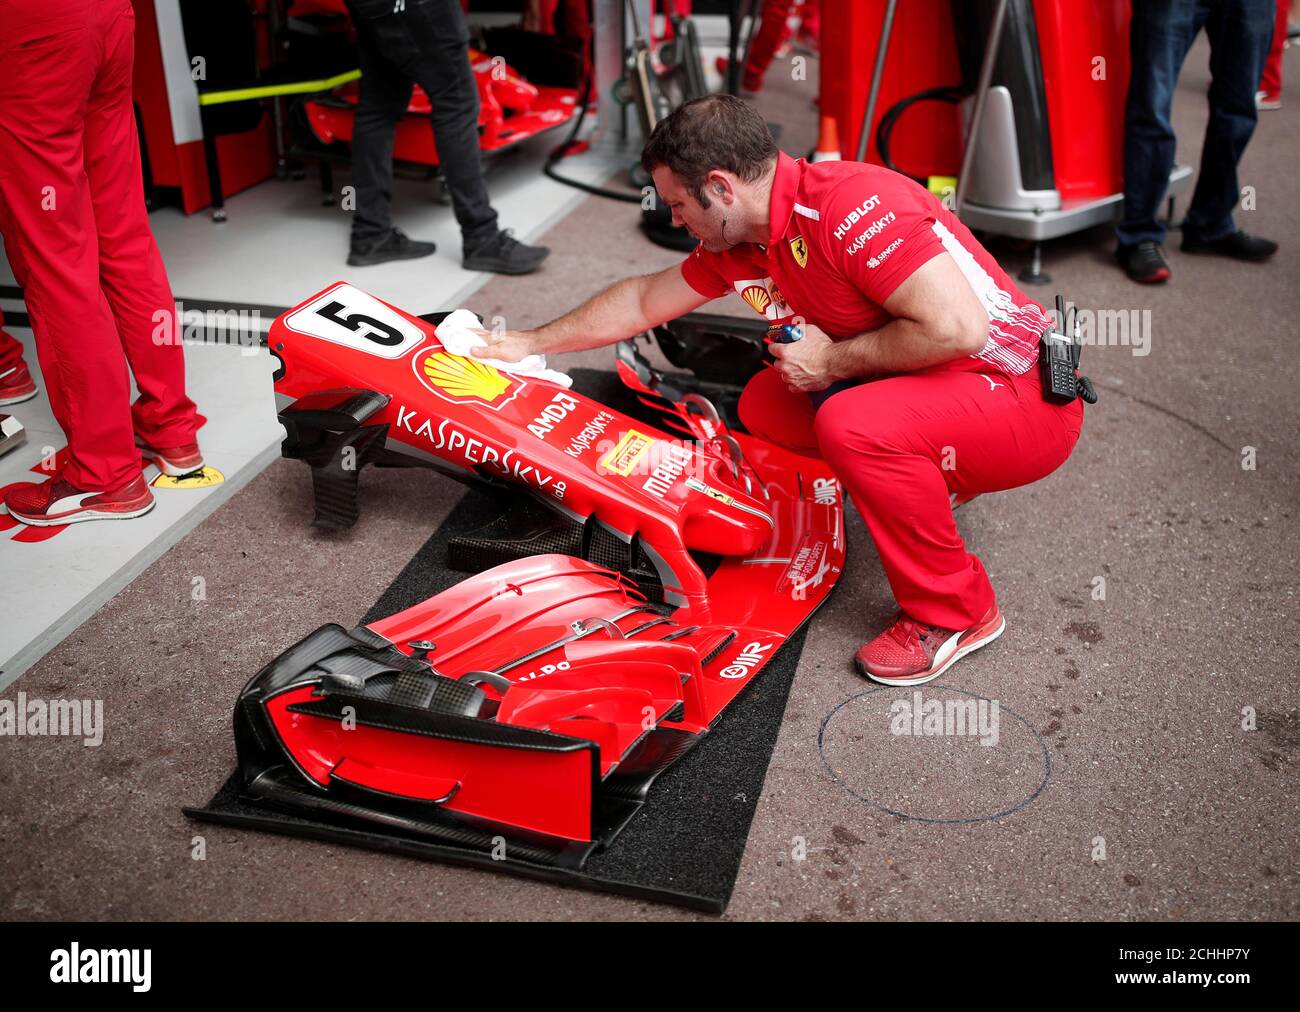 Motoring - Formule 1 F1 - Monaco Grand Prix - circuit de Monaco, Monte  Carlo, Monaco - 24 mai 2018 le personnel de Ferrari effectue des travaux d' entretien sur une pièce de